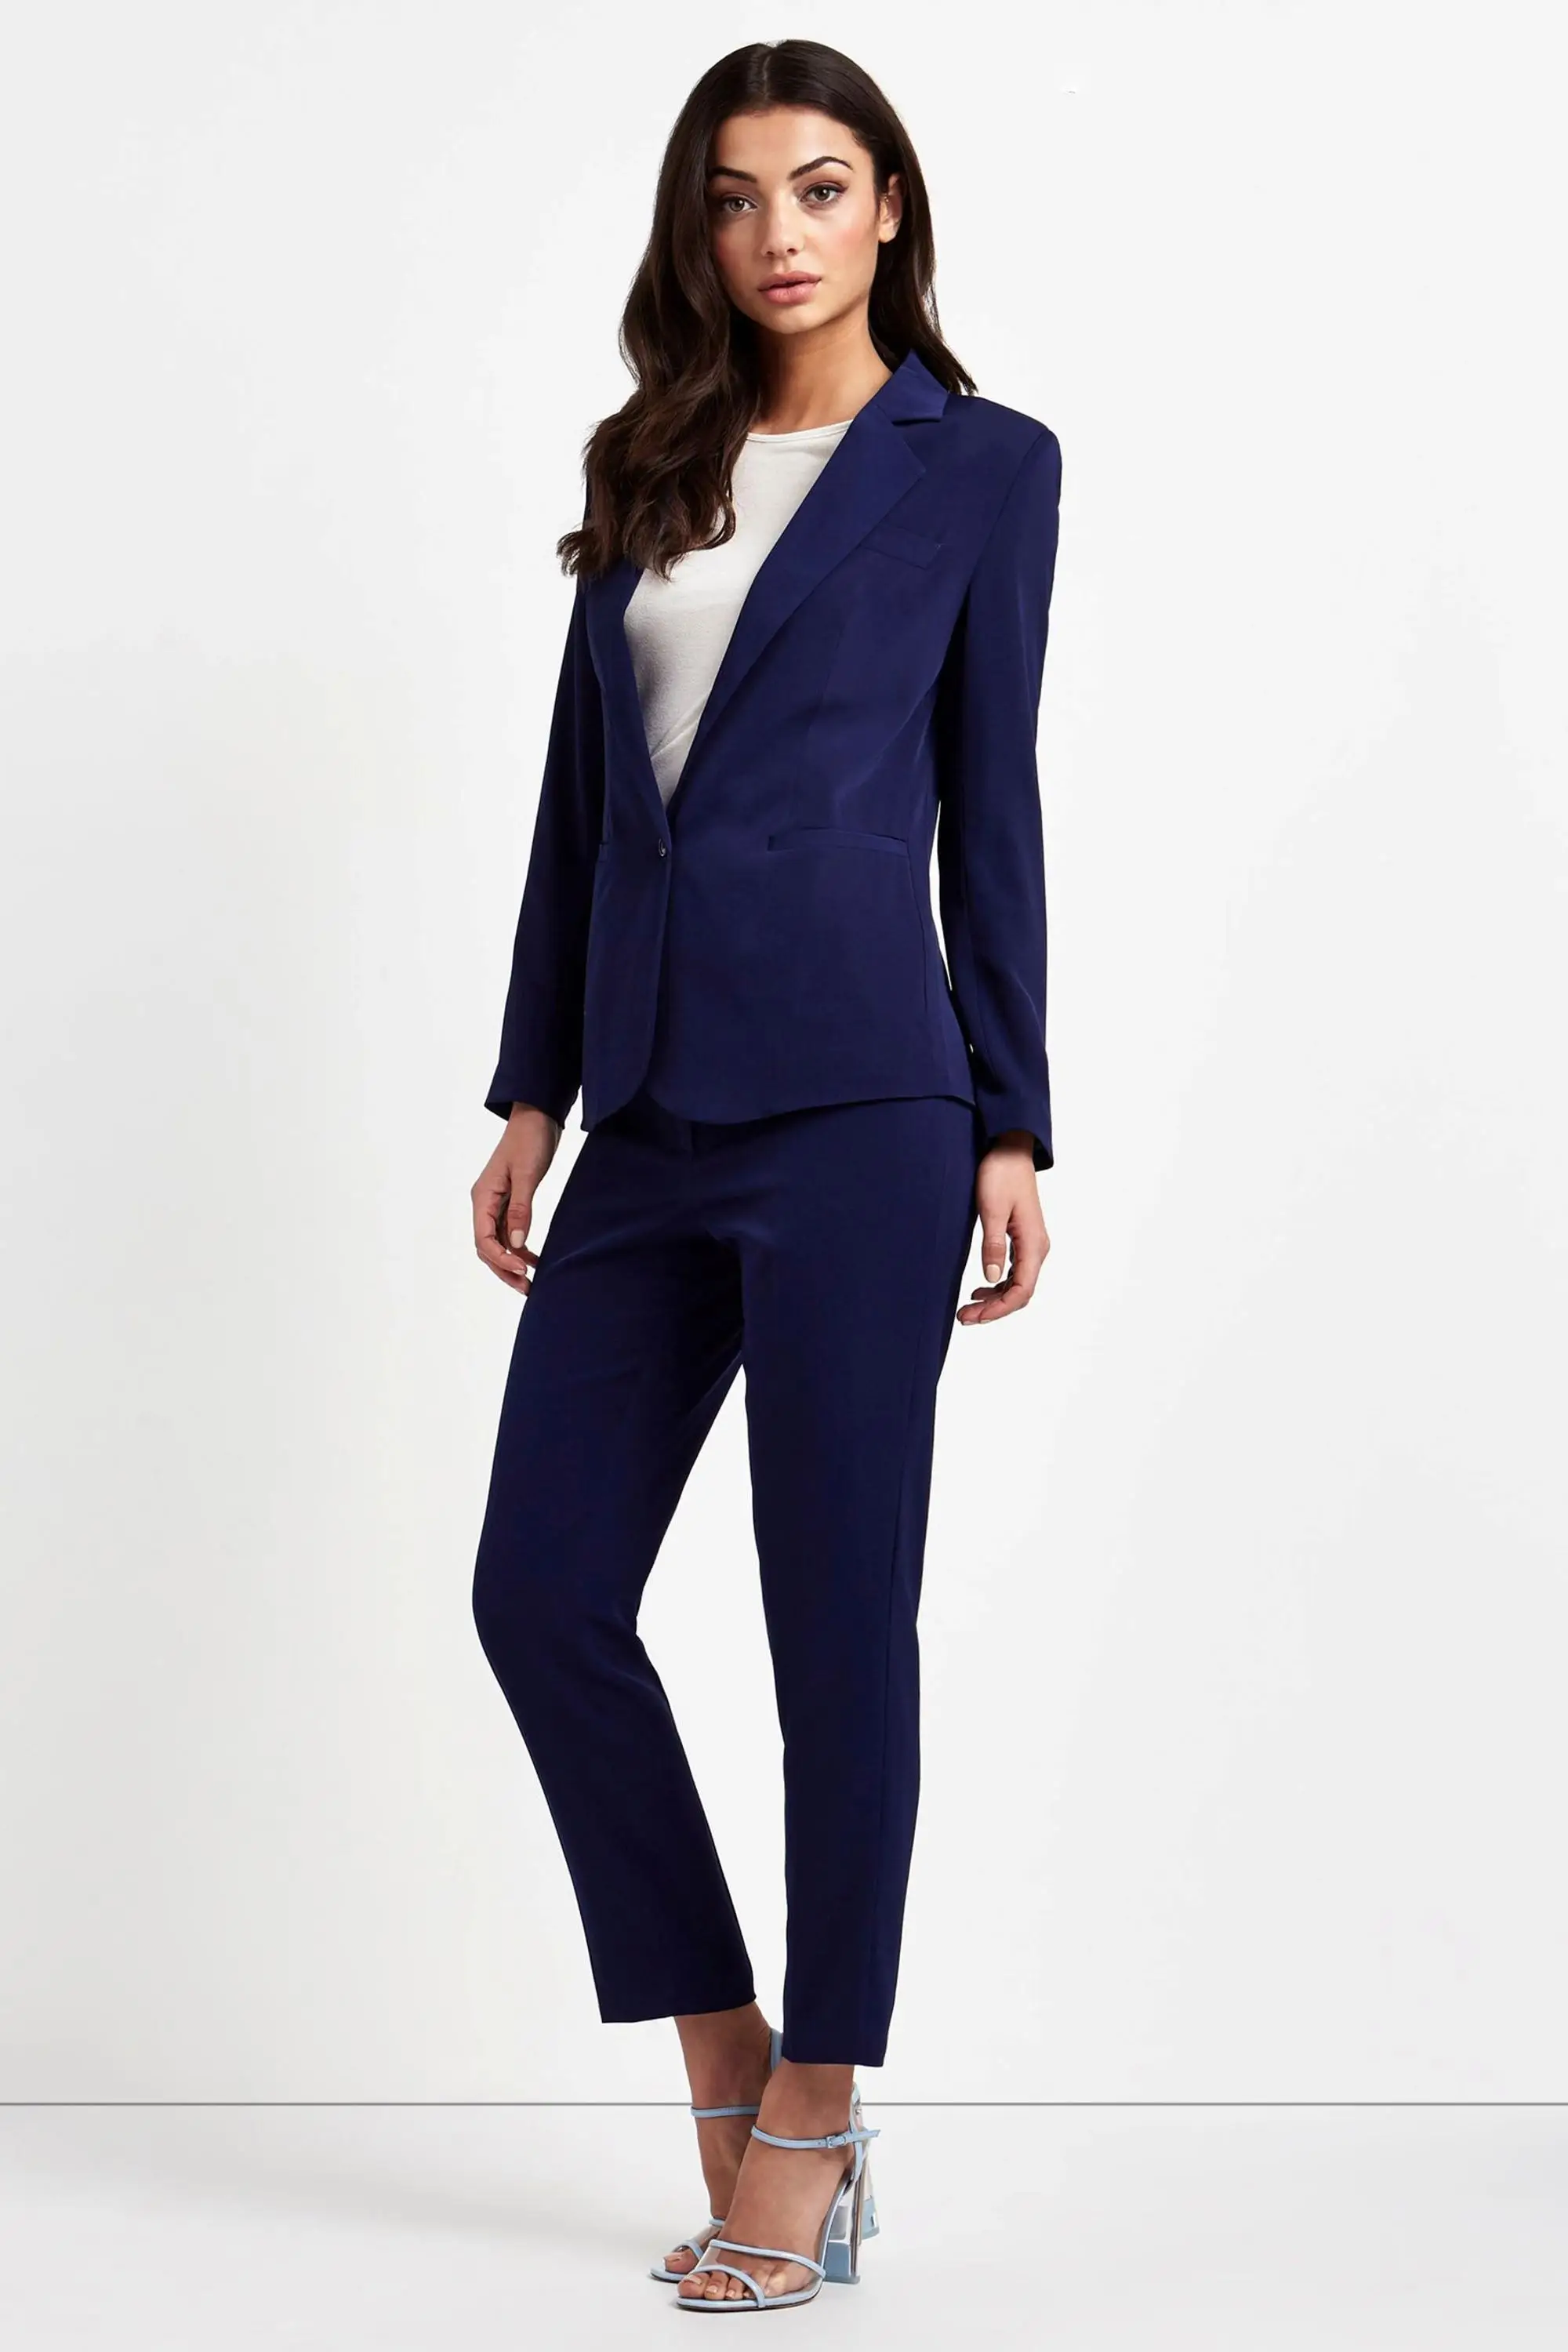 韓国ロイヤルブルーファッションスタイルイタリア女性 3 点オフィススーツアパレル Buy イタリア女性スーツ 女性スリーピースのスーツ 女性のファッションアパレル Product On Alibaba Com